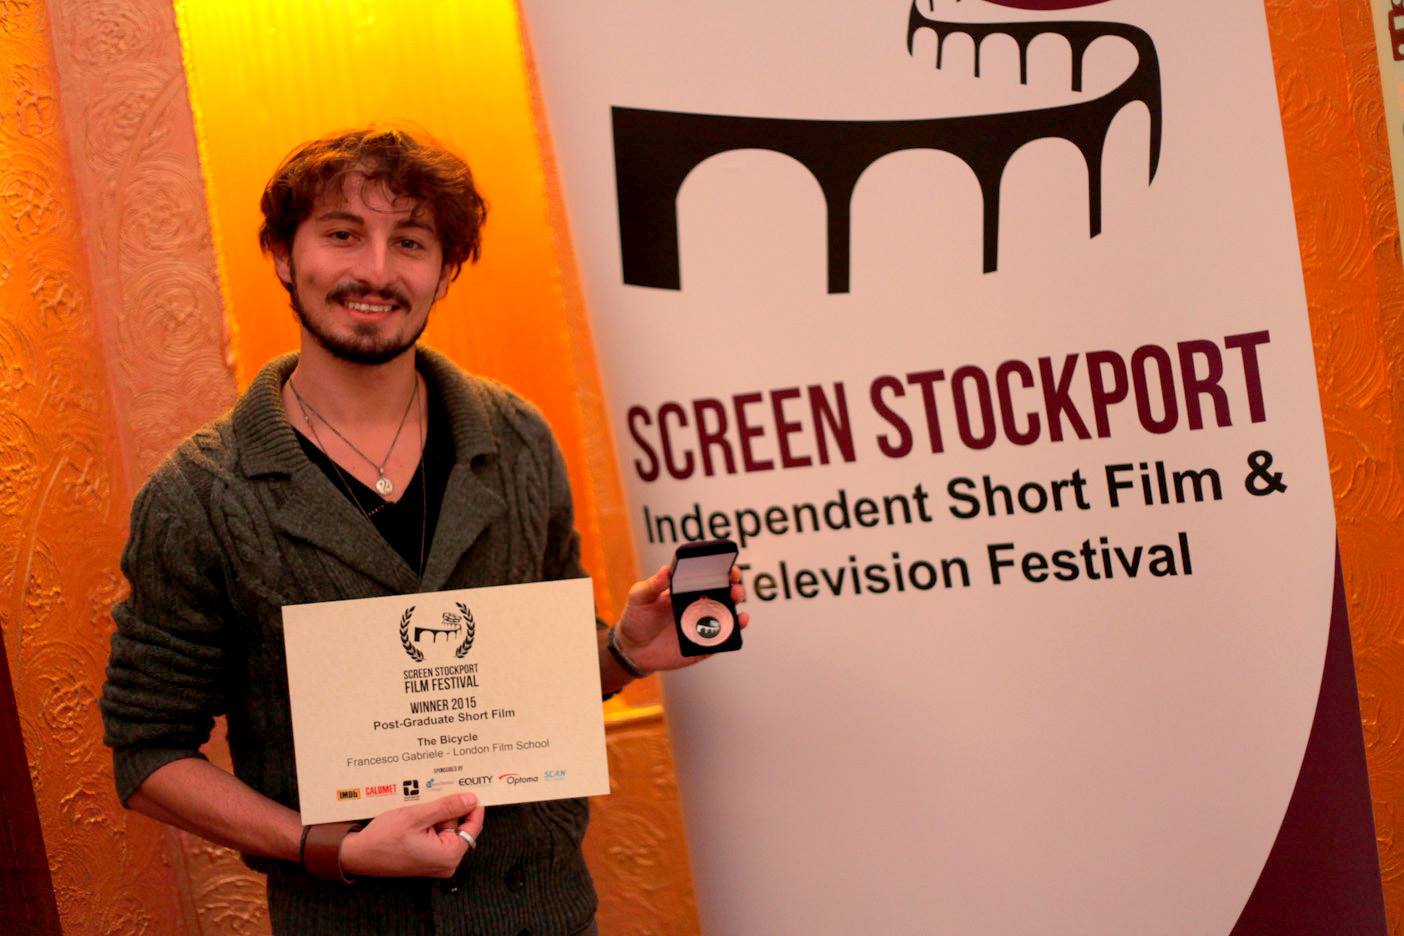 Screen Stockport Film Festival